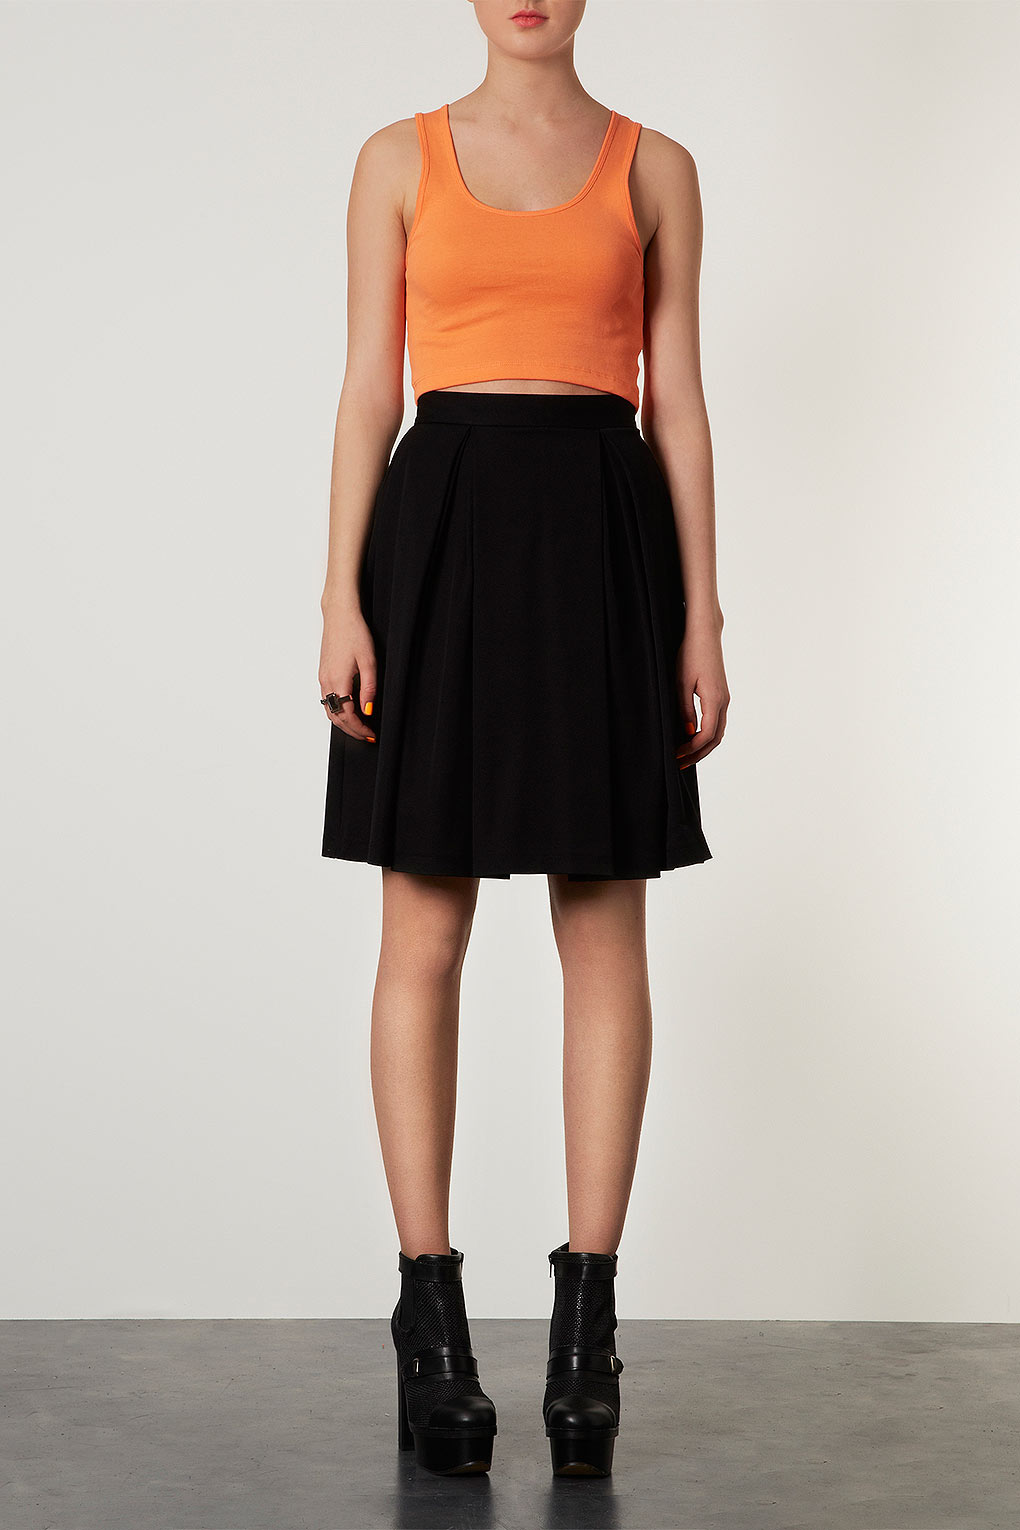 TOPSHOP Knee Length Pleat Skirt in Black - Lyst